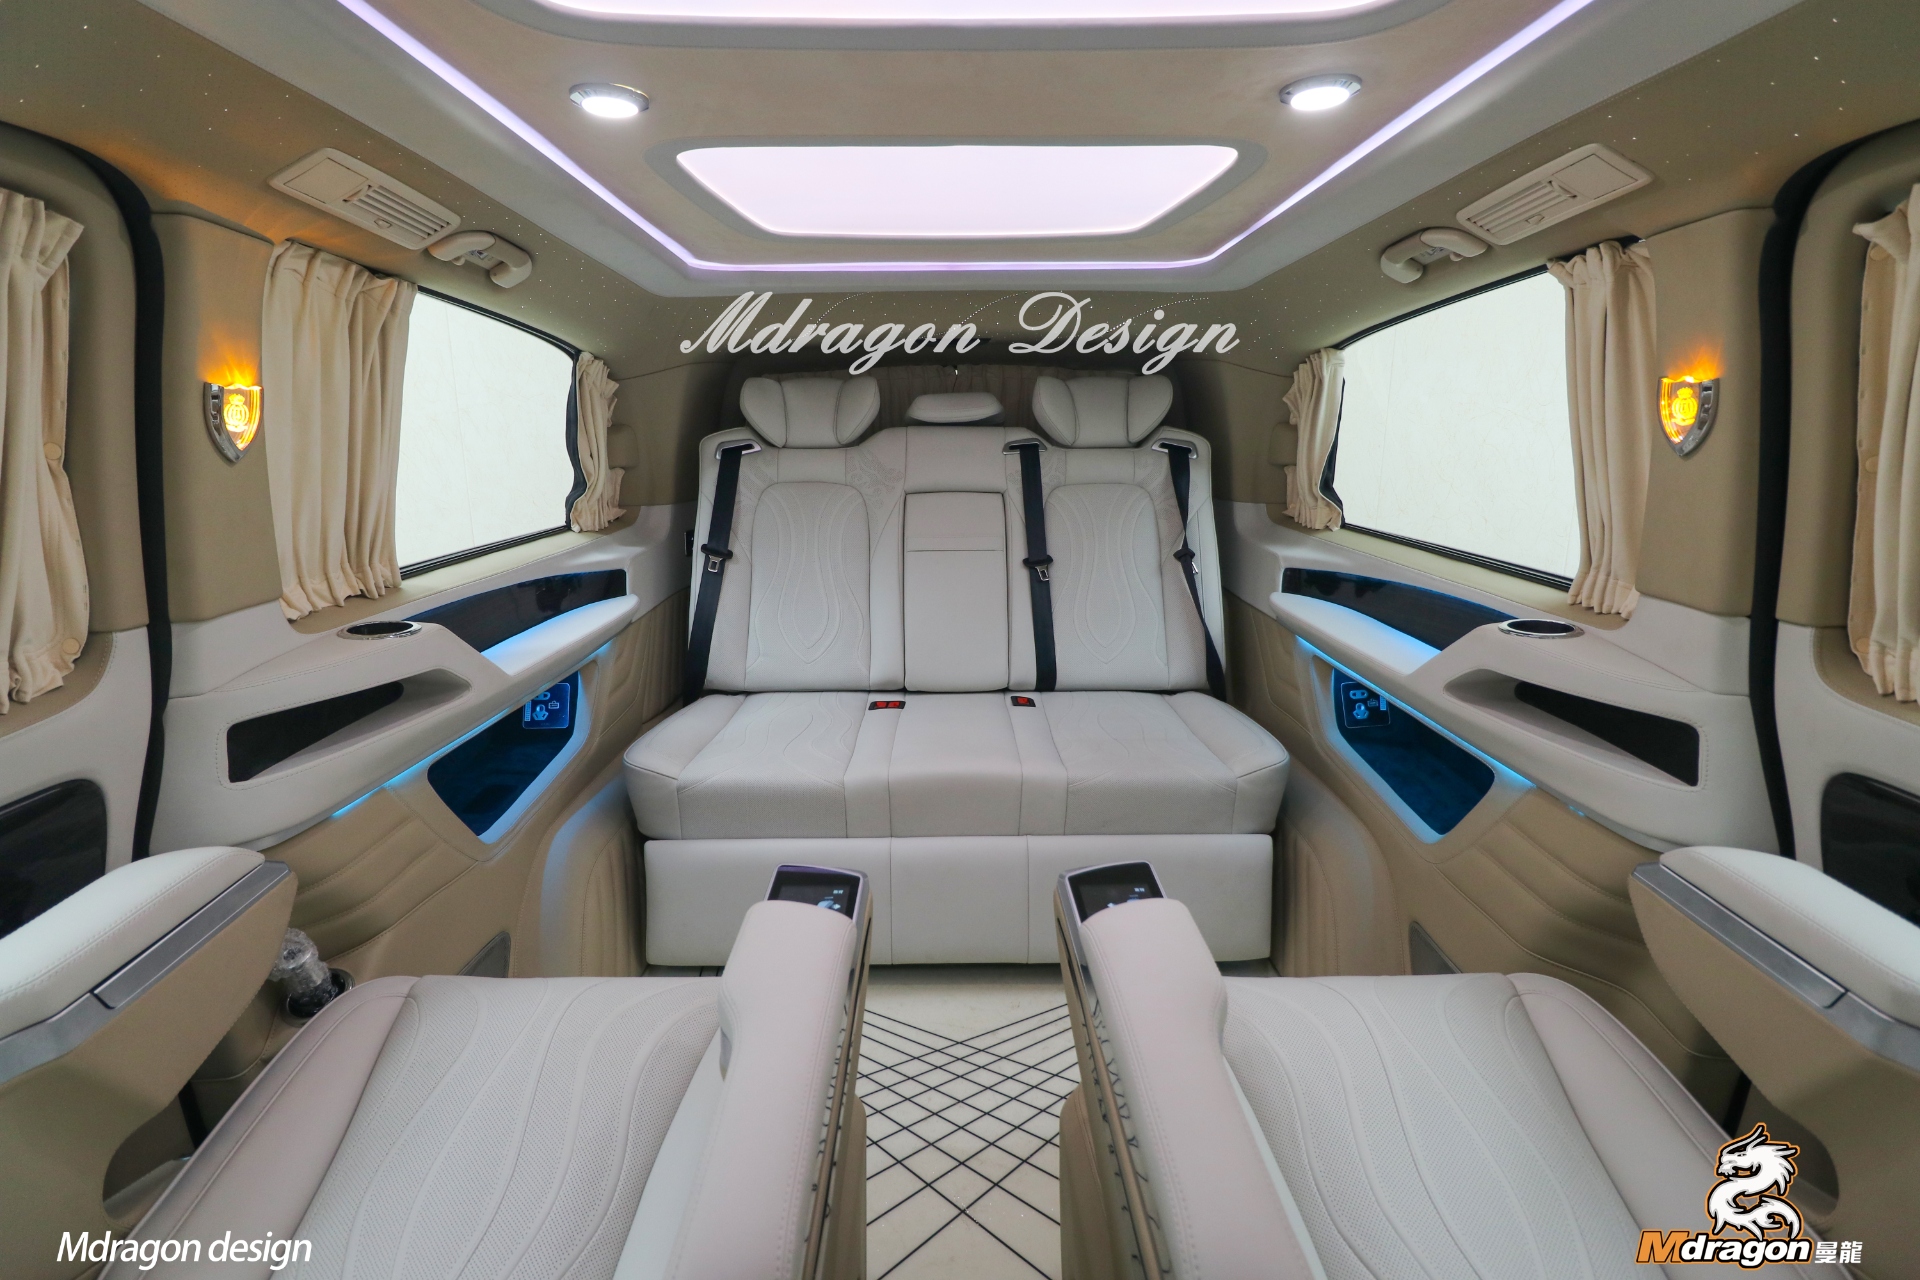 No.392 2015-2018 Benz Vito interior modification